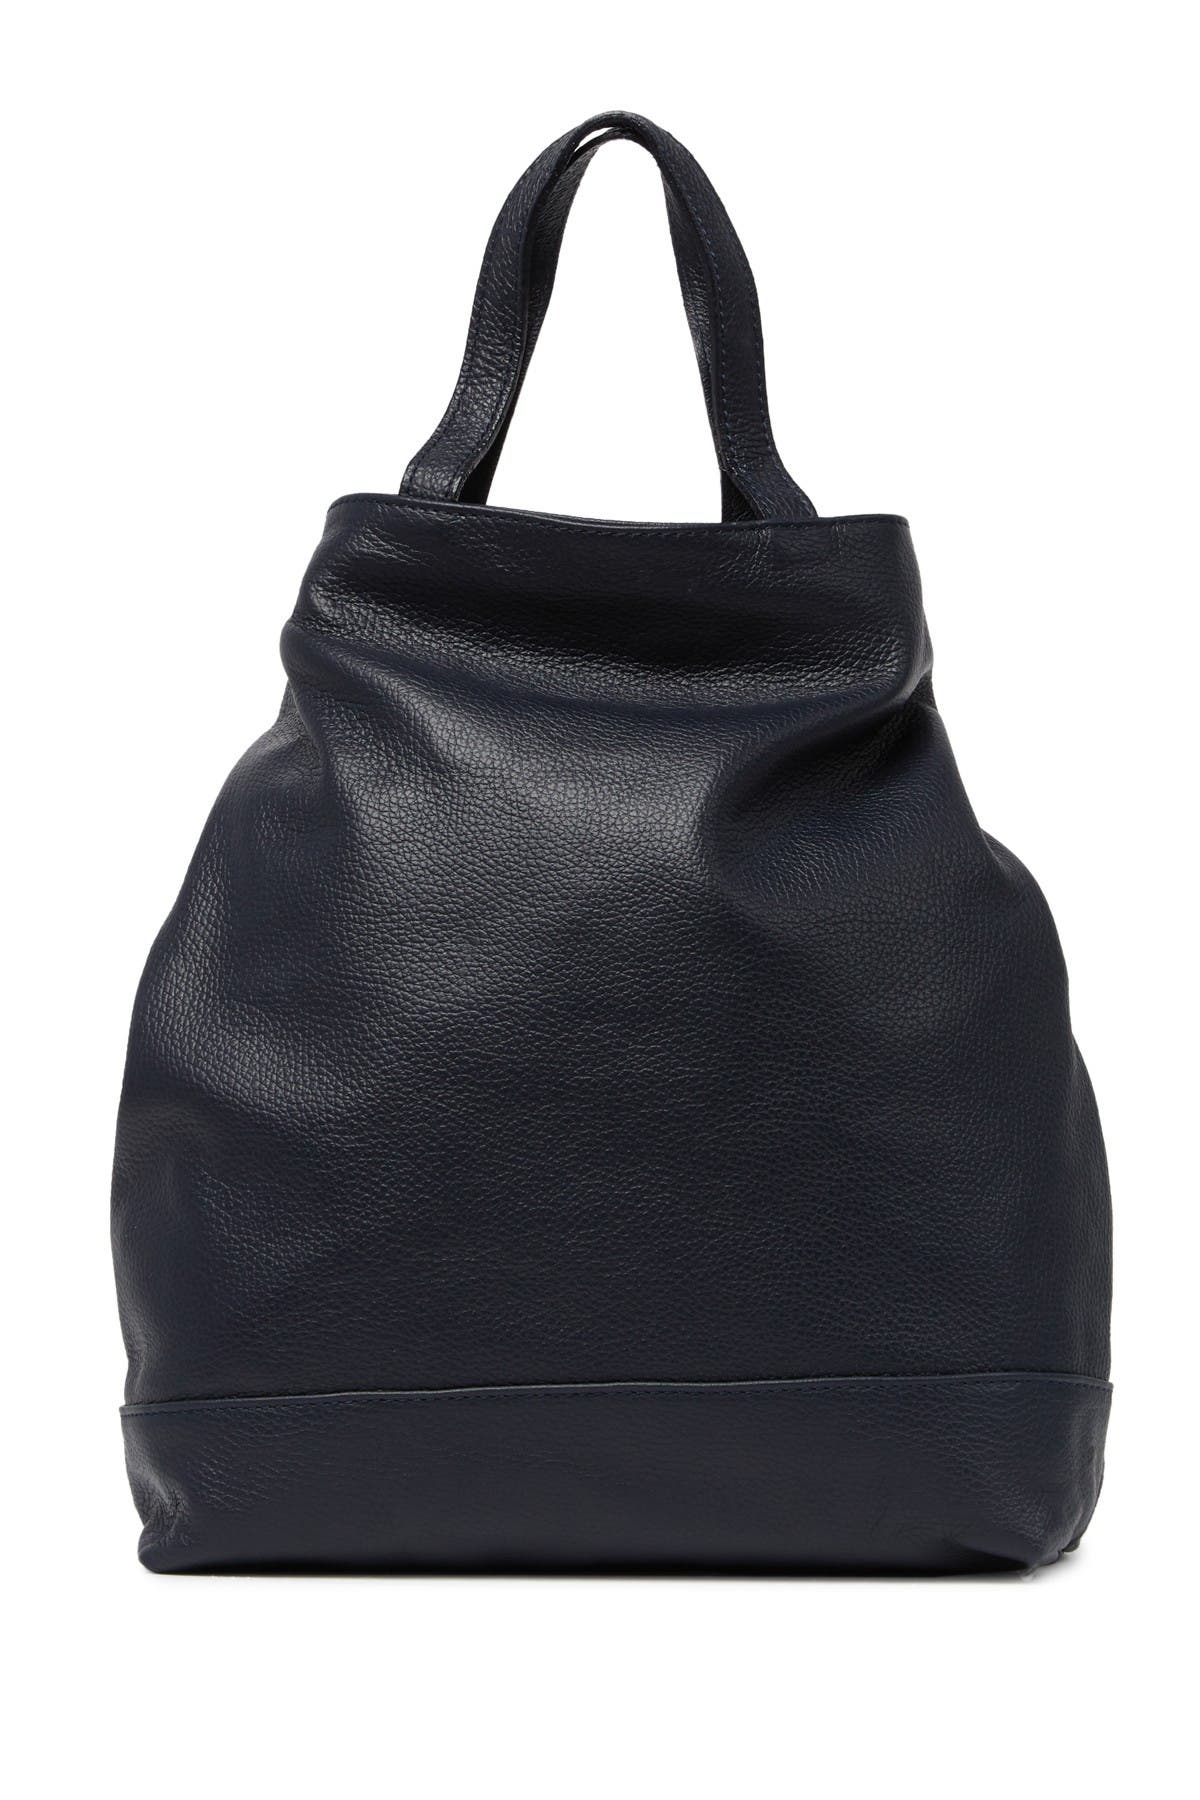 isabella rhea backpack